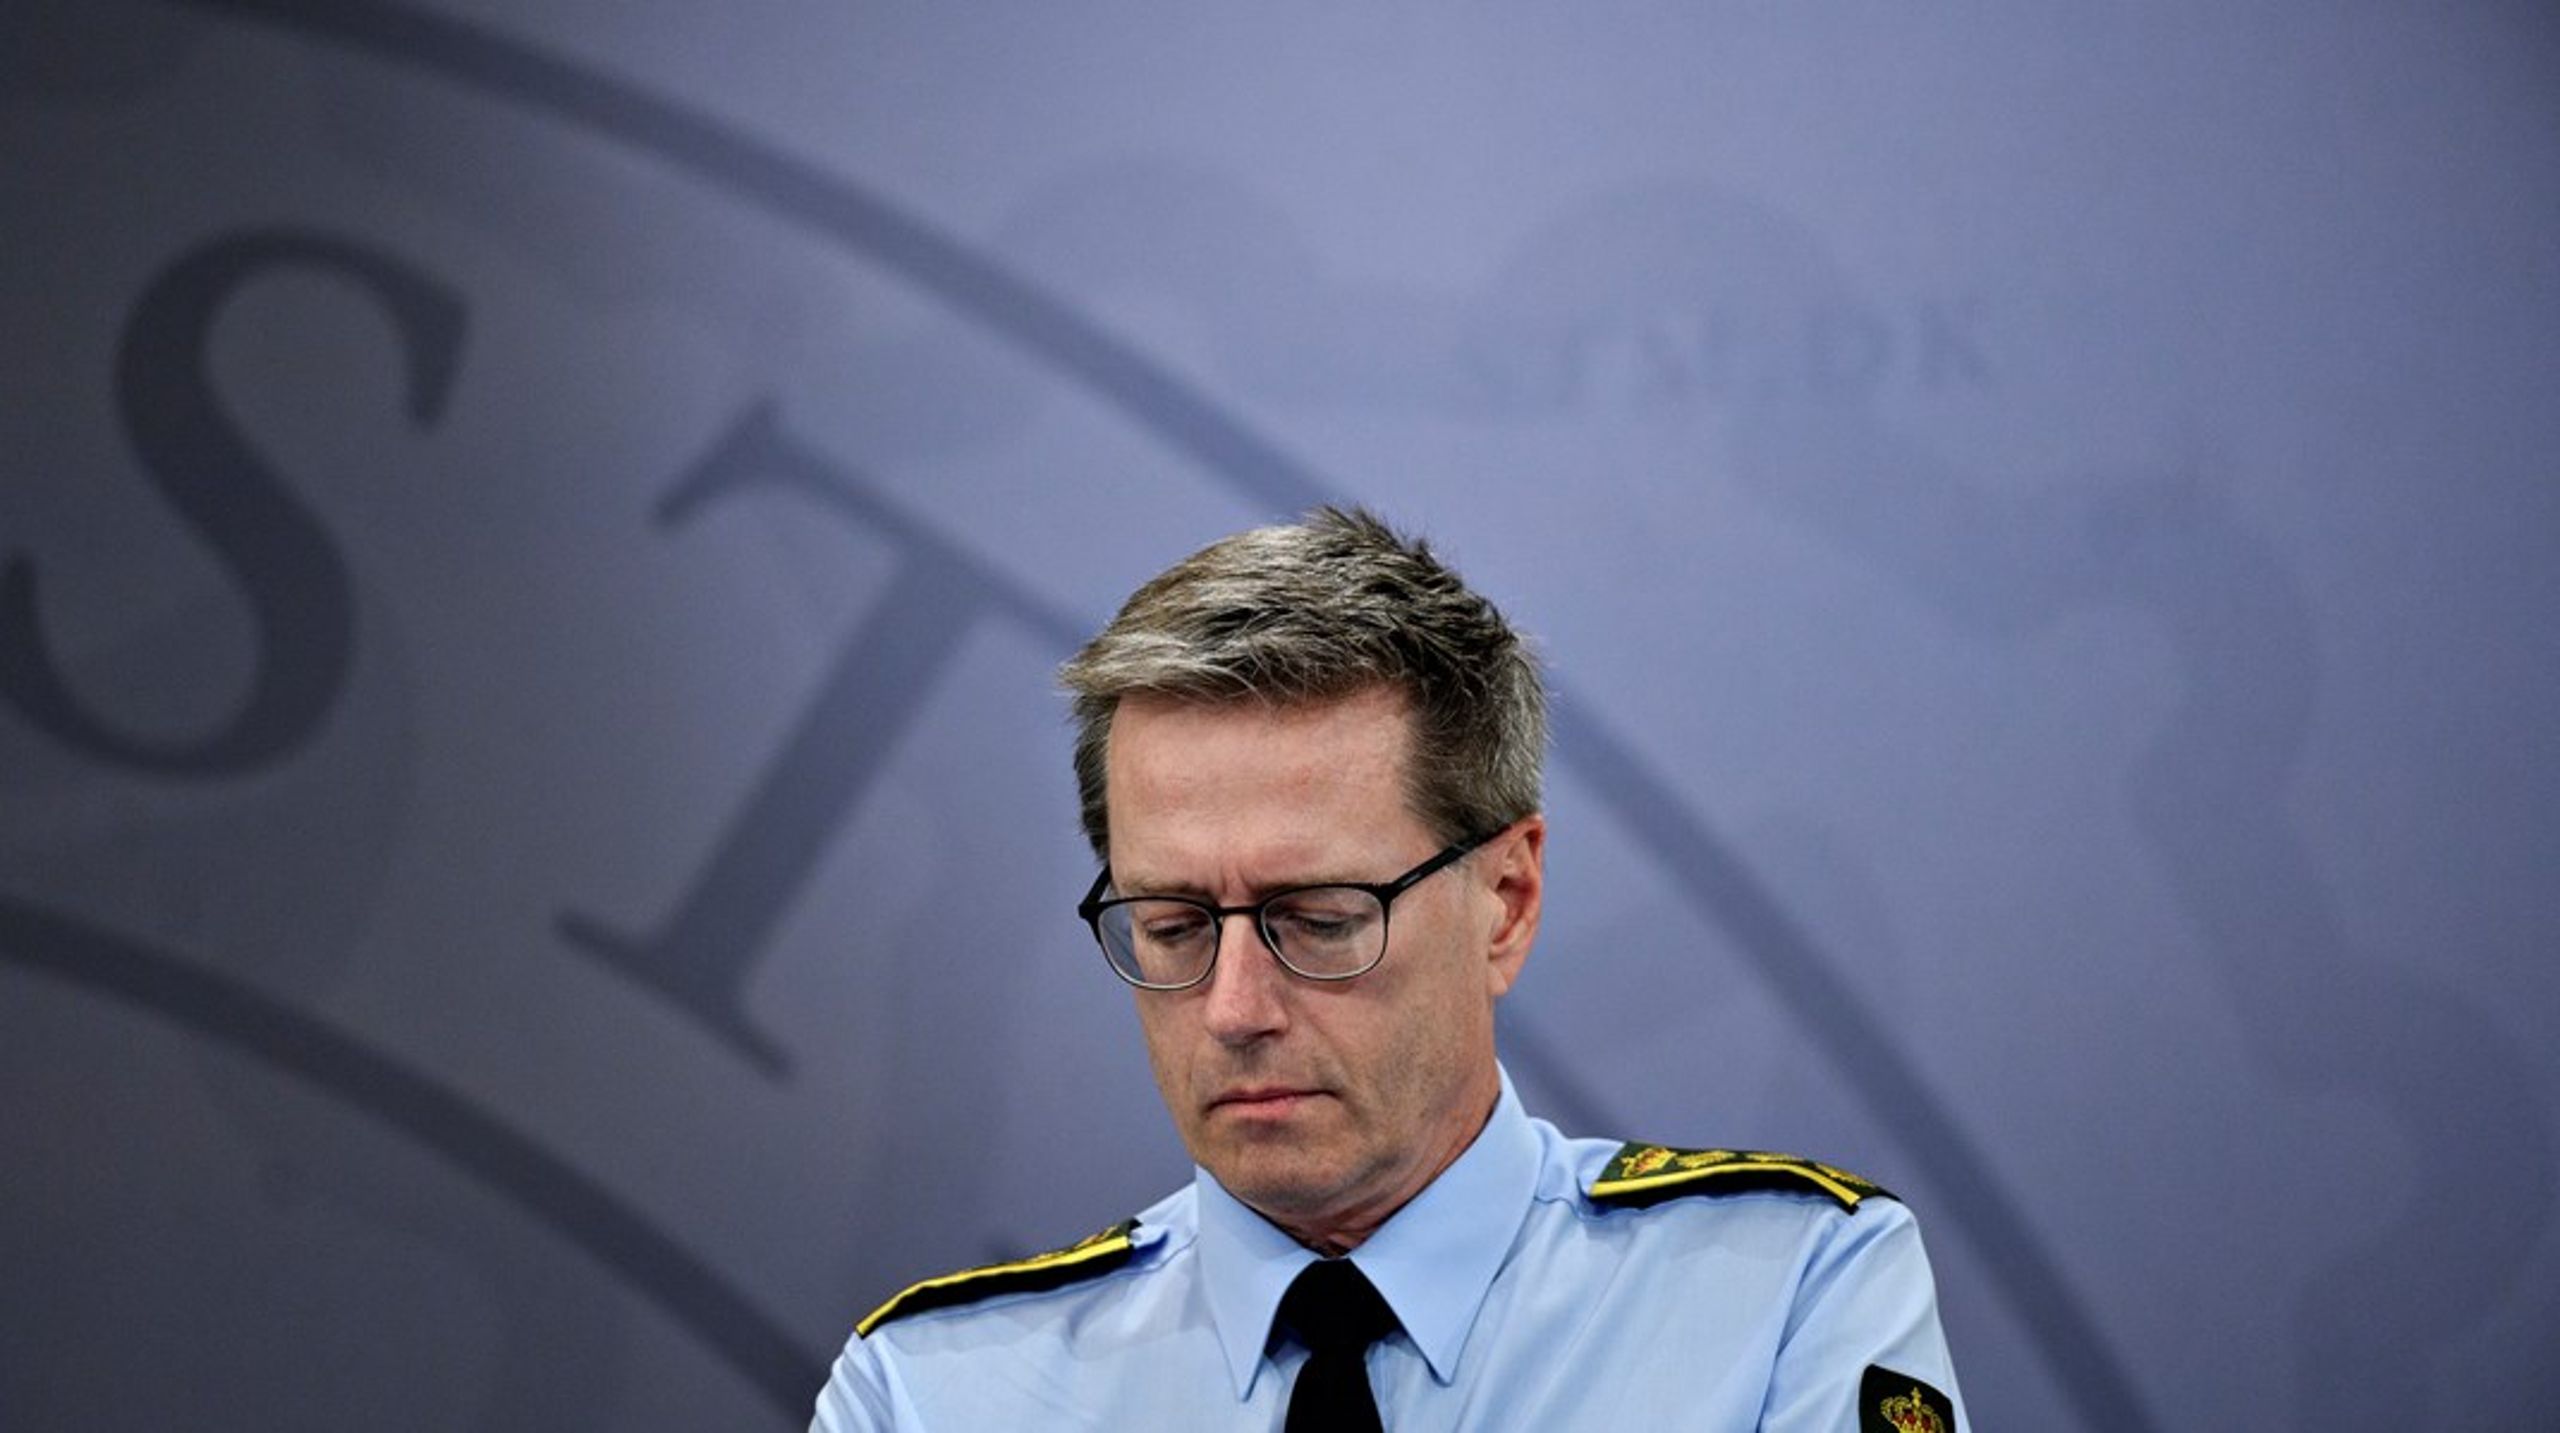 Rigspolitichef Thorkild Fogde blev hjemsendt i august efter minkkommisionens rapport. To af hans medarbejdere er sluppet med en disciplinær advarsel.<br><br>